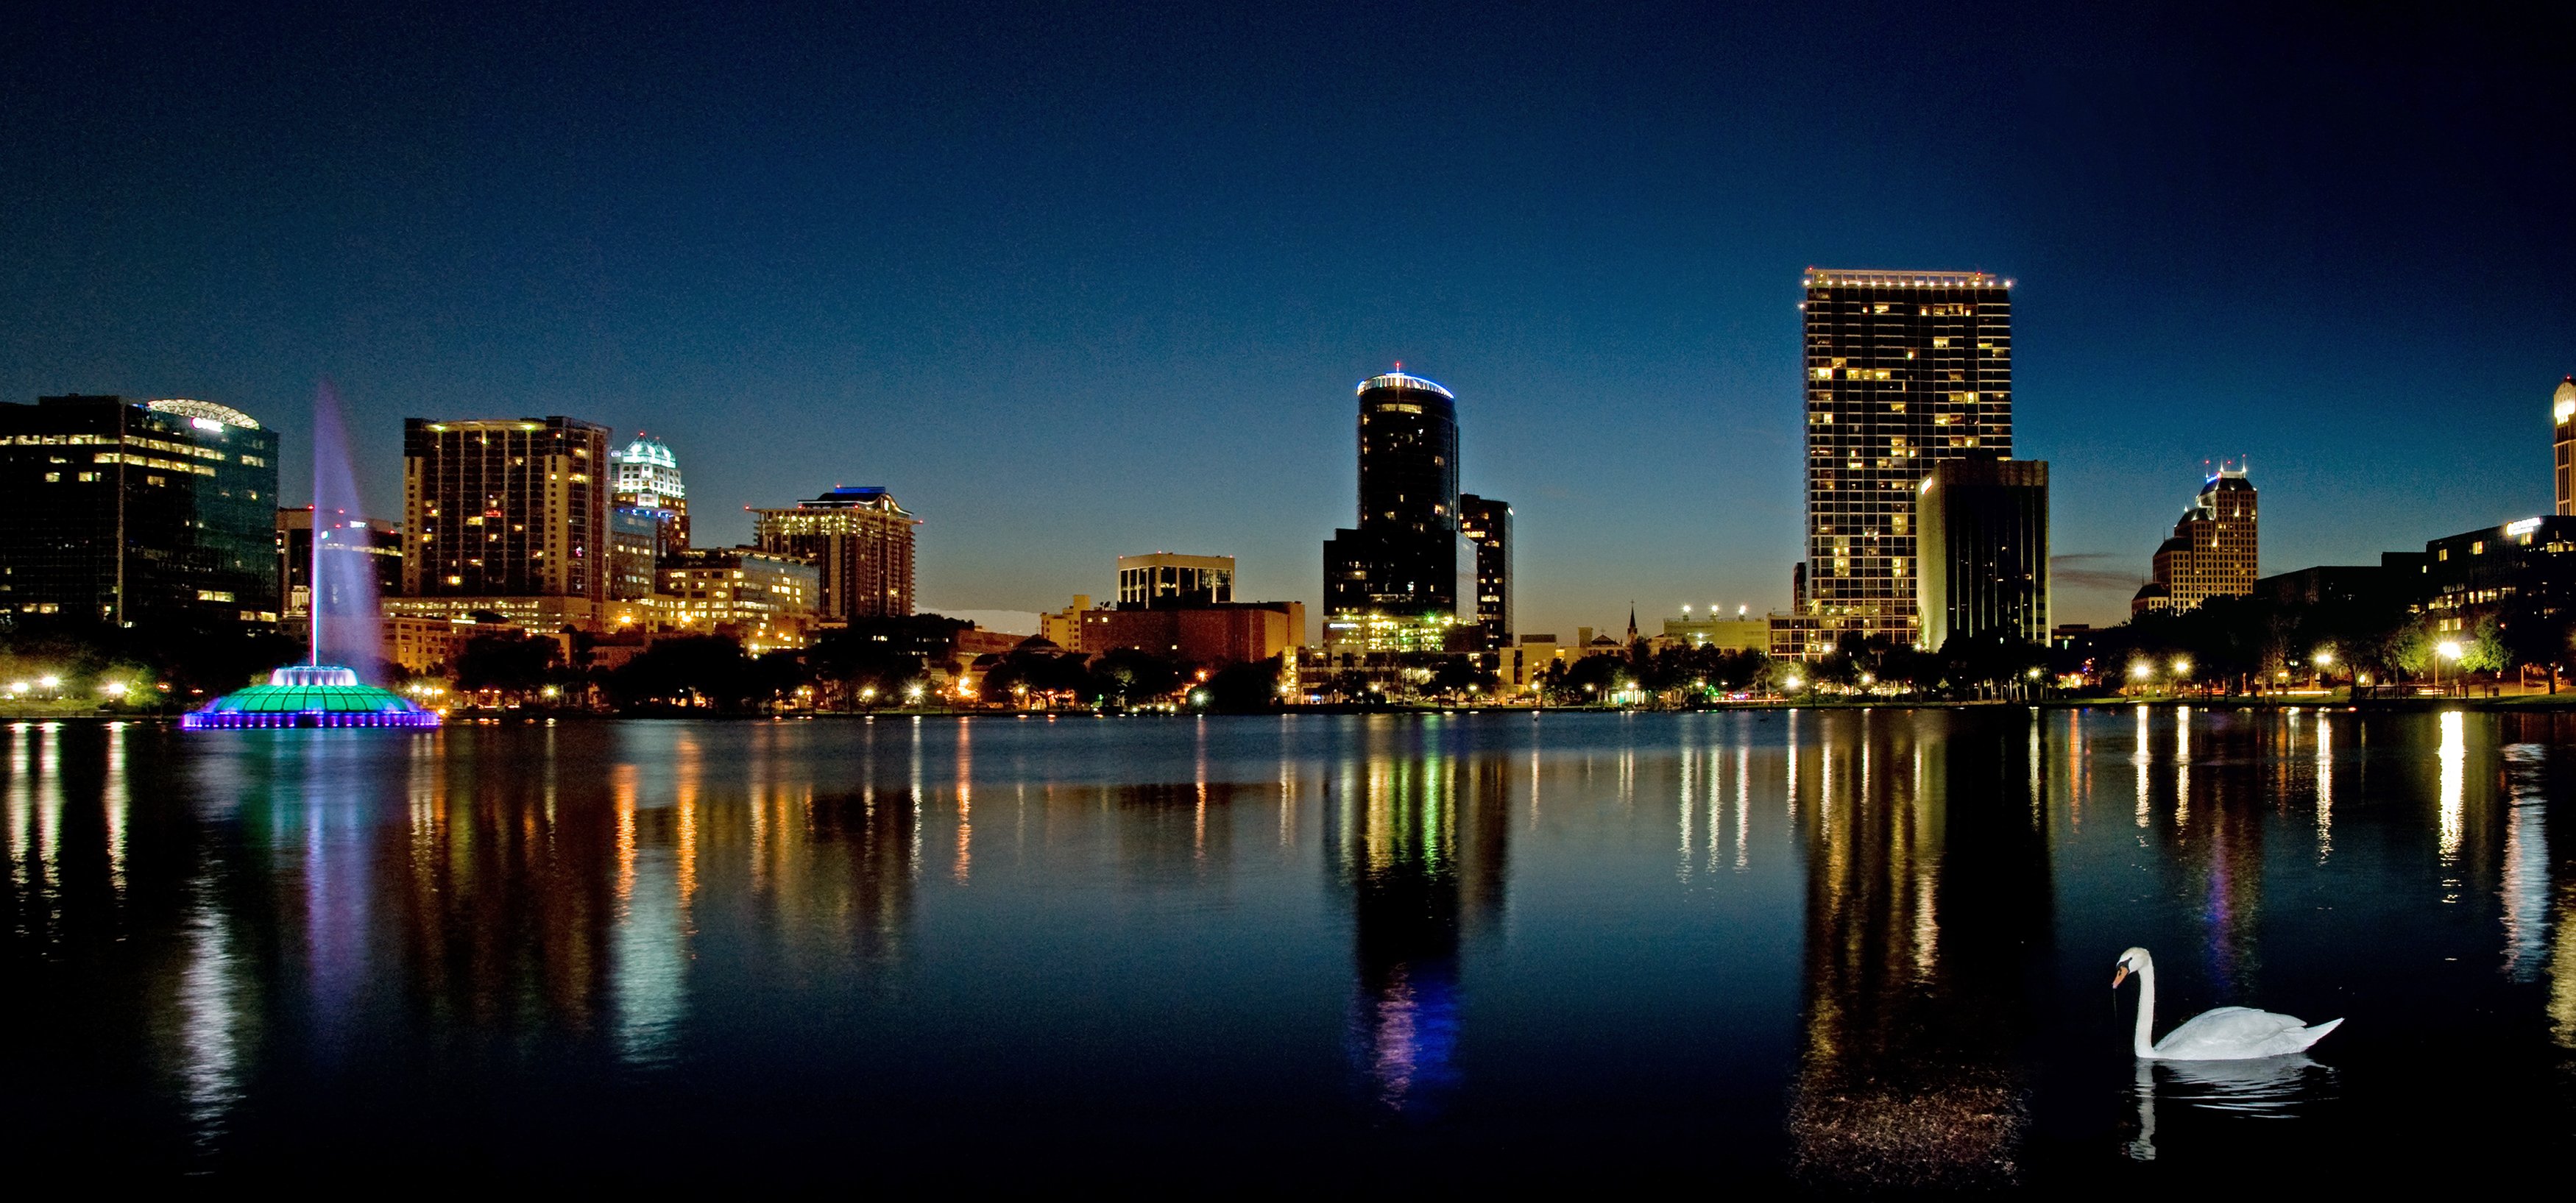 Background Image of Downtown Orlando's Lake Eola